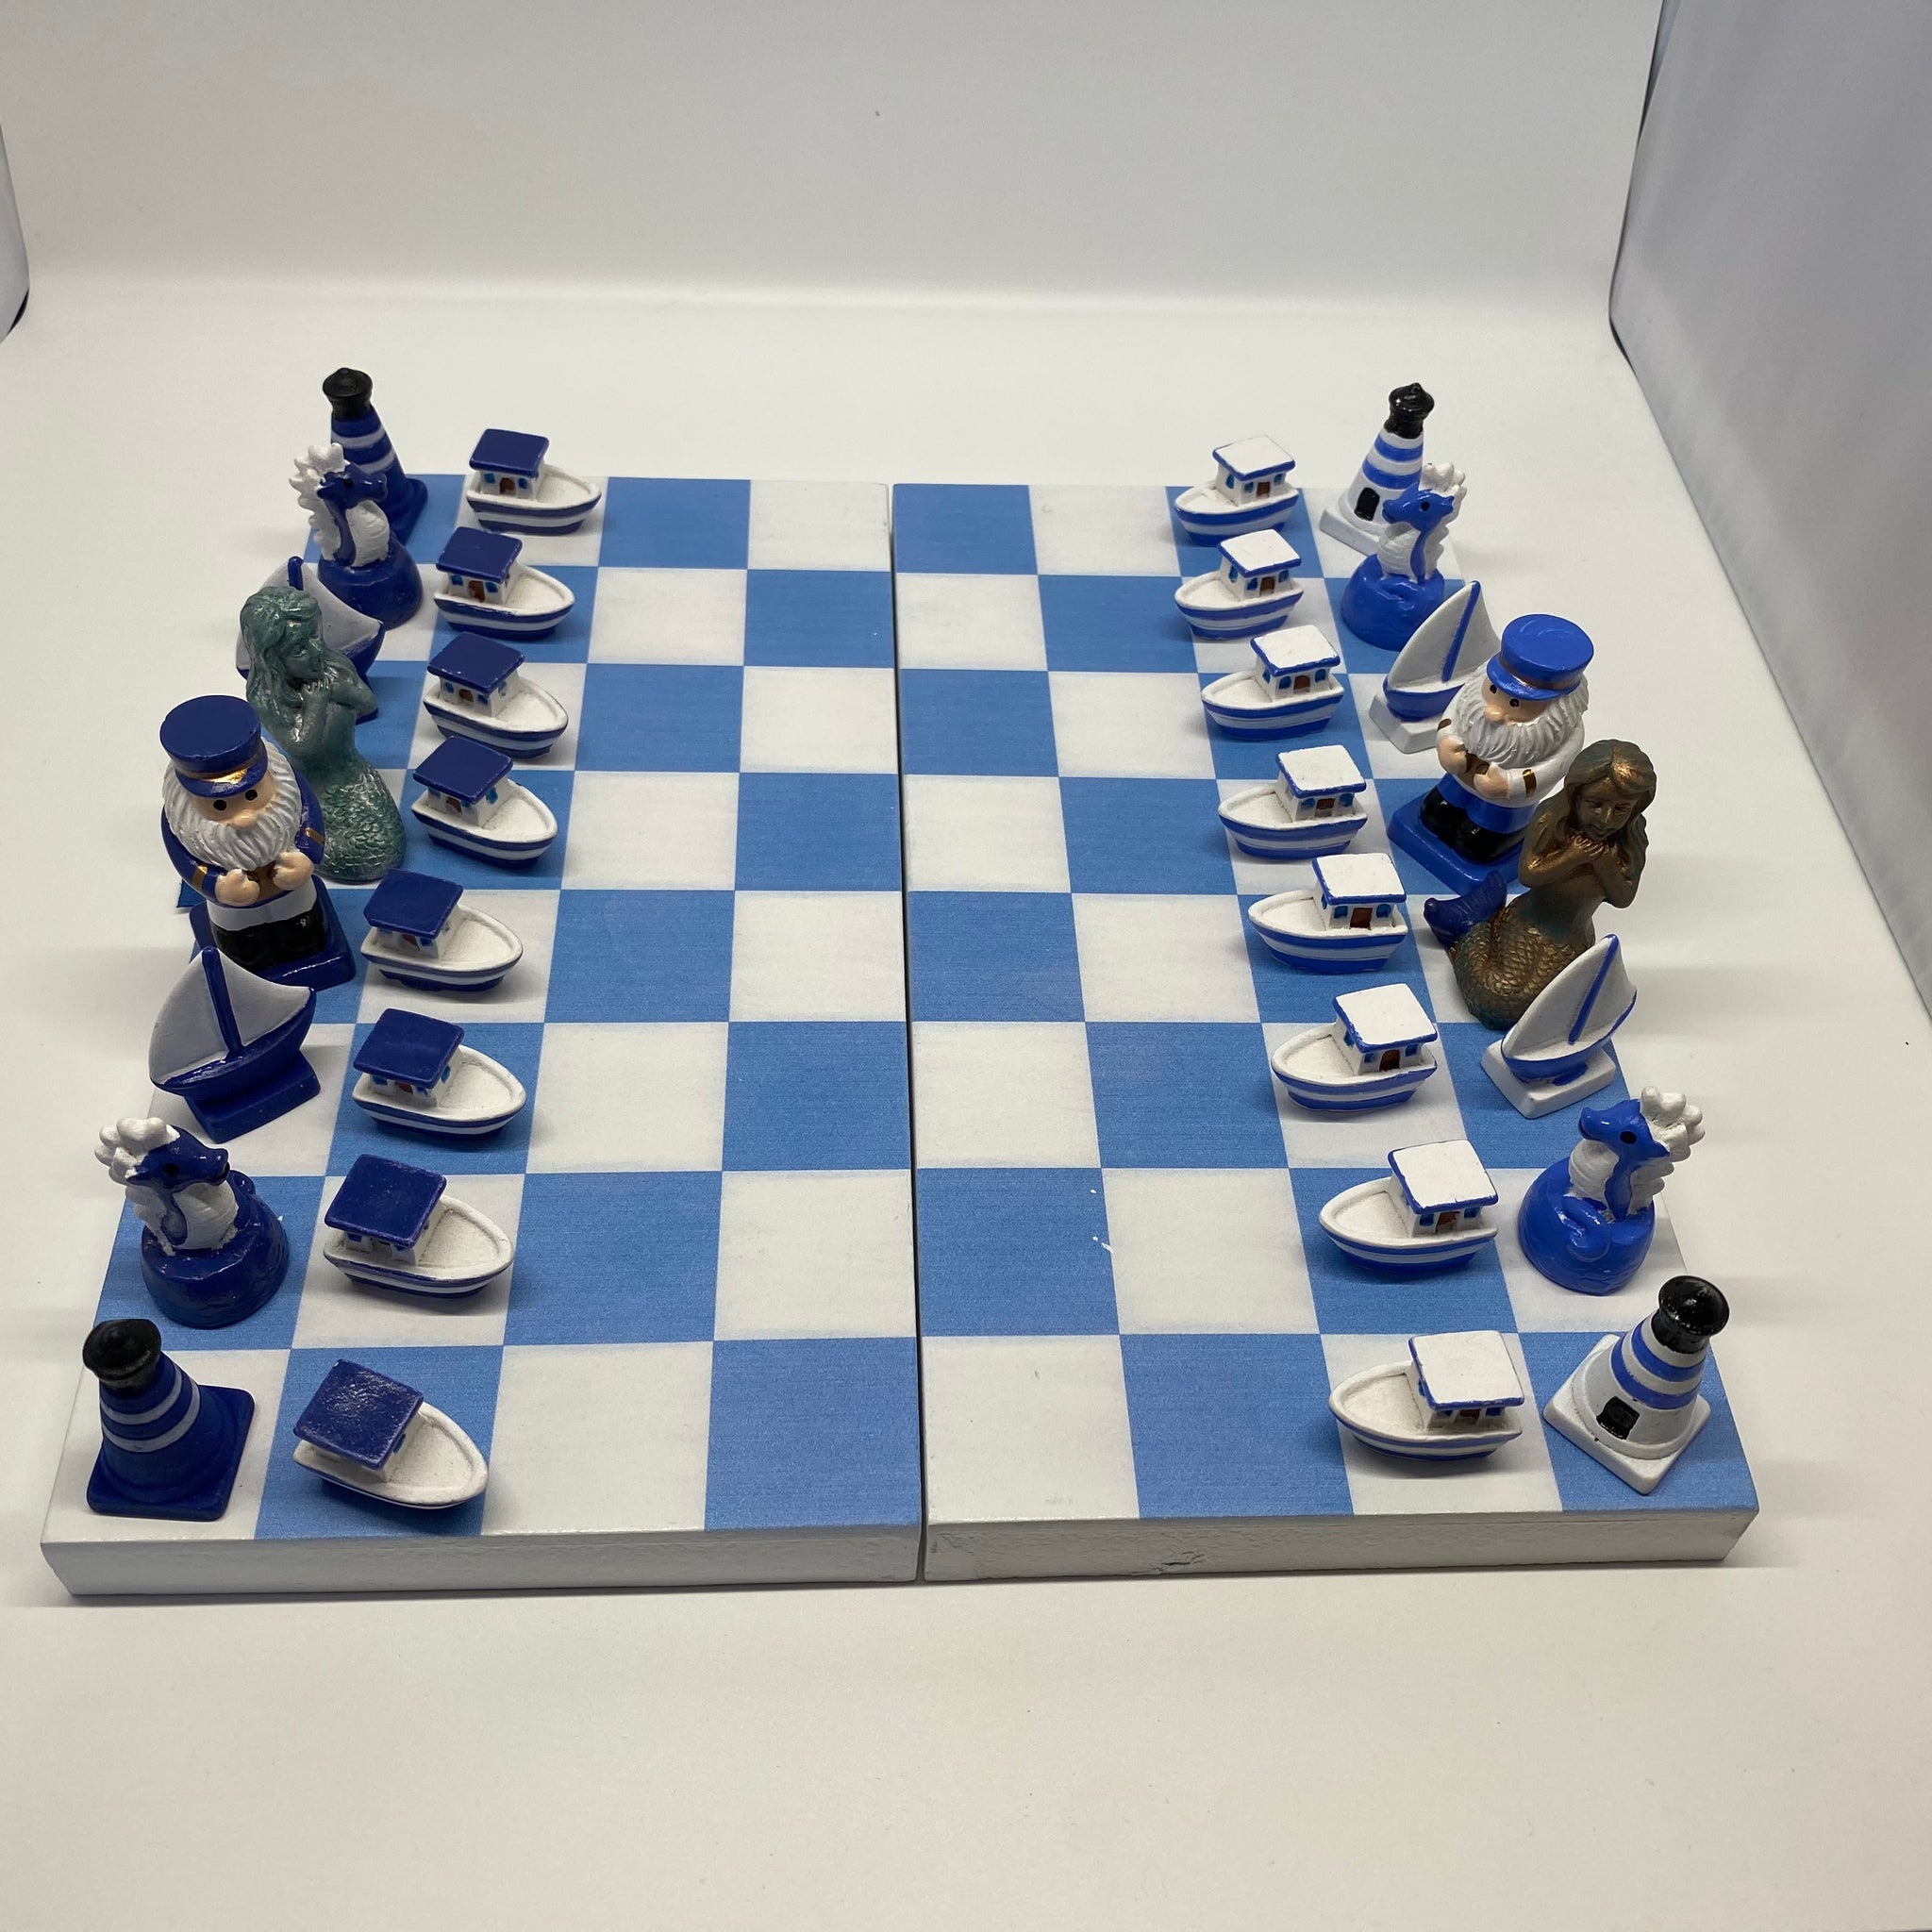 schach spieler gegen spieler